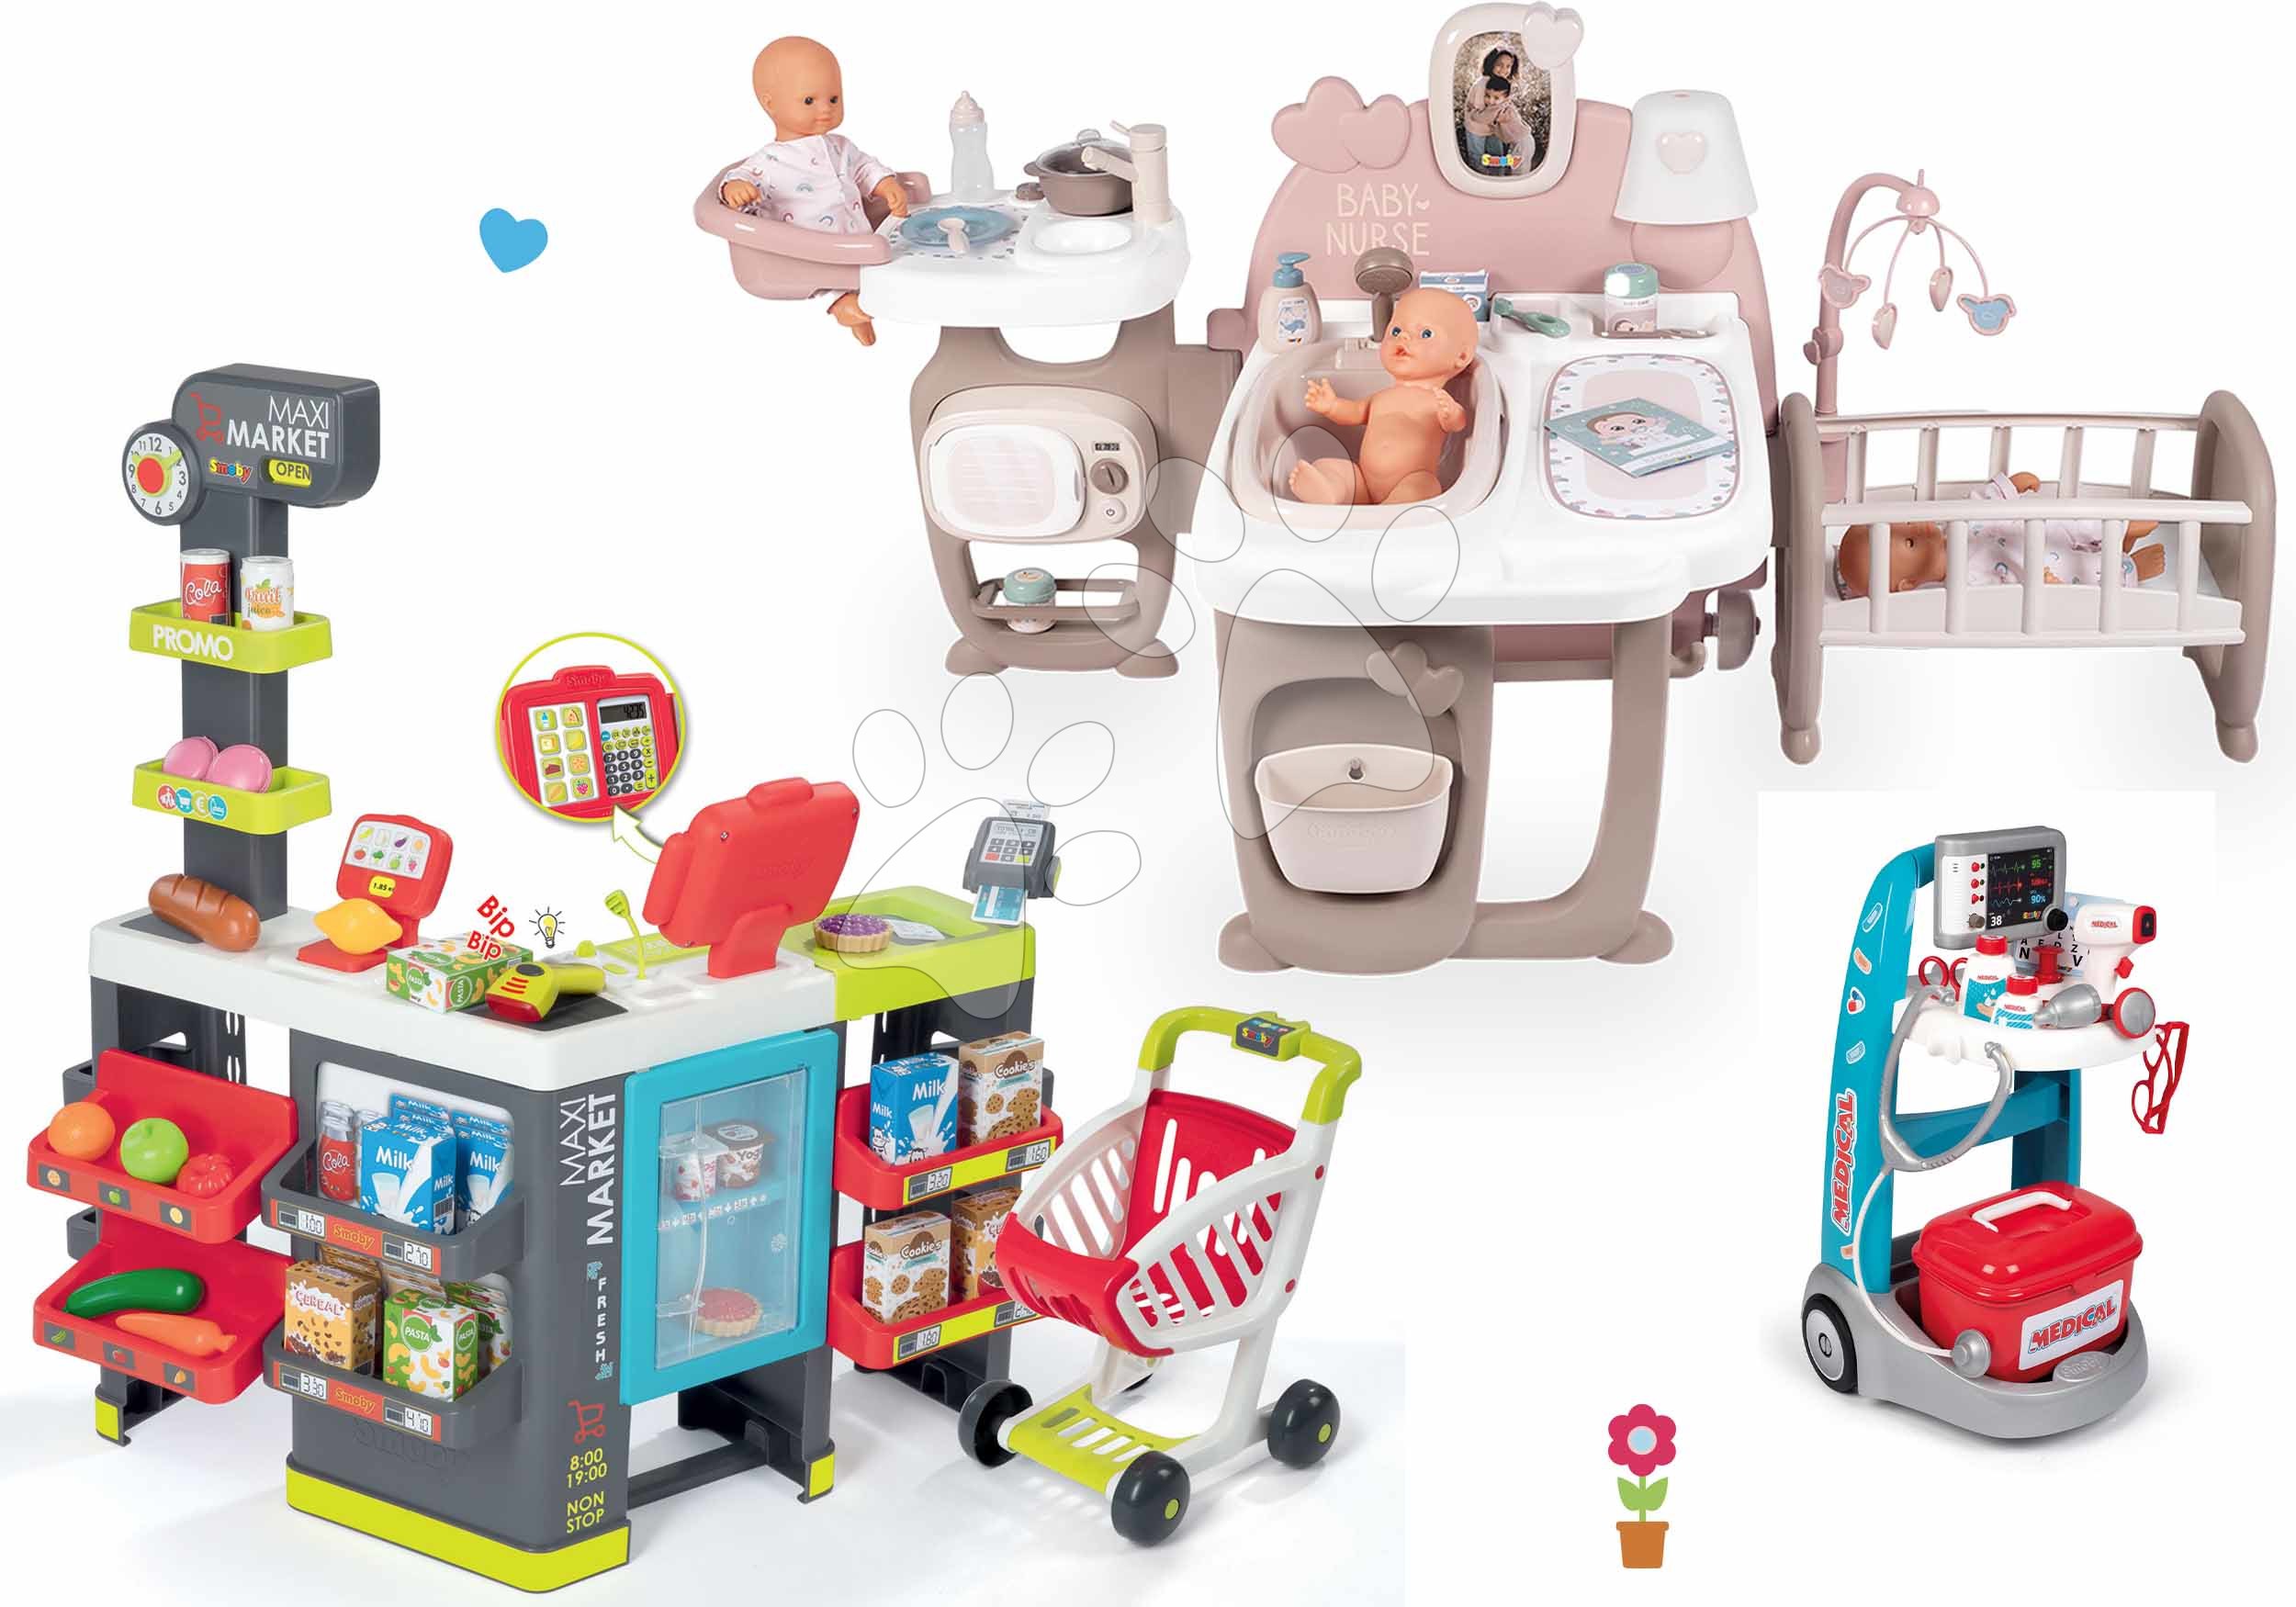 Kućice za lutke setovi - Set kućica za lutku Large Doll's Play Center Natur D'Amour Baby Nurse Smoby i elektronička trgovina Maxi Market s medicinskim kolicima